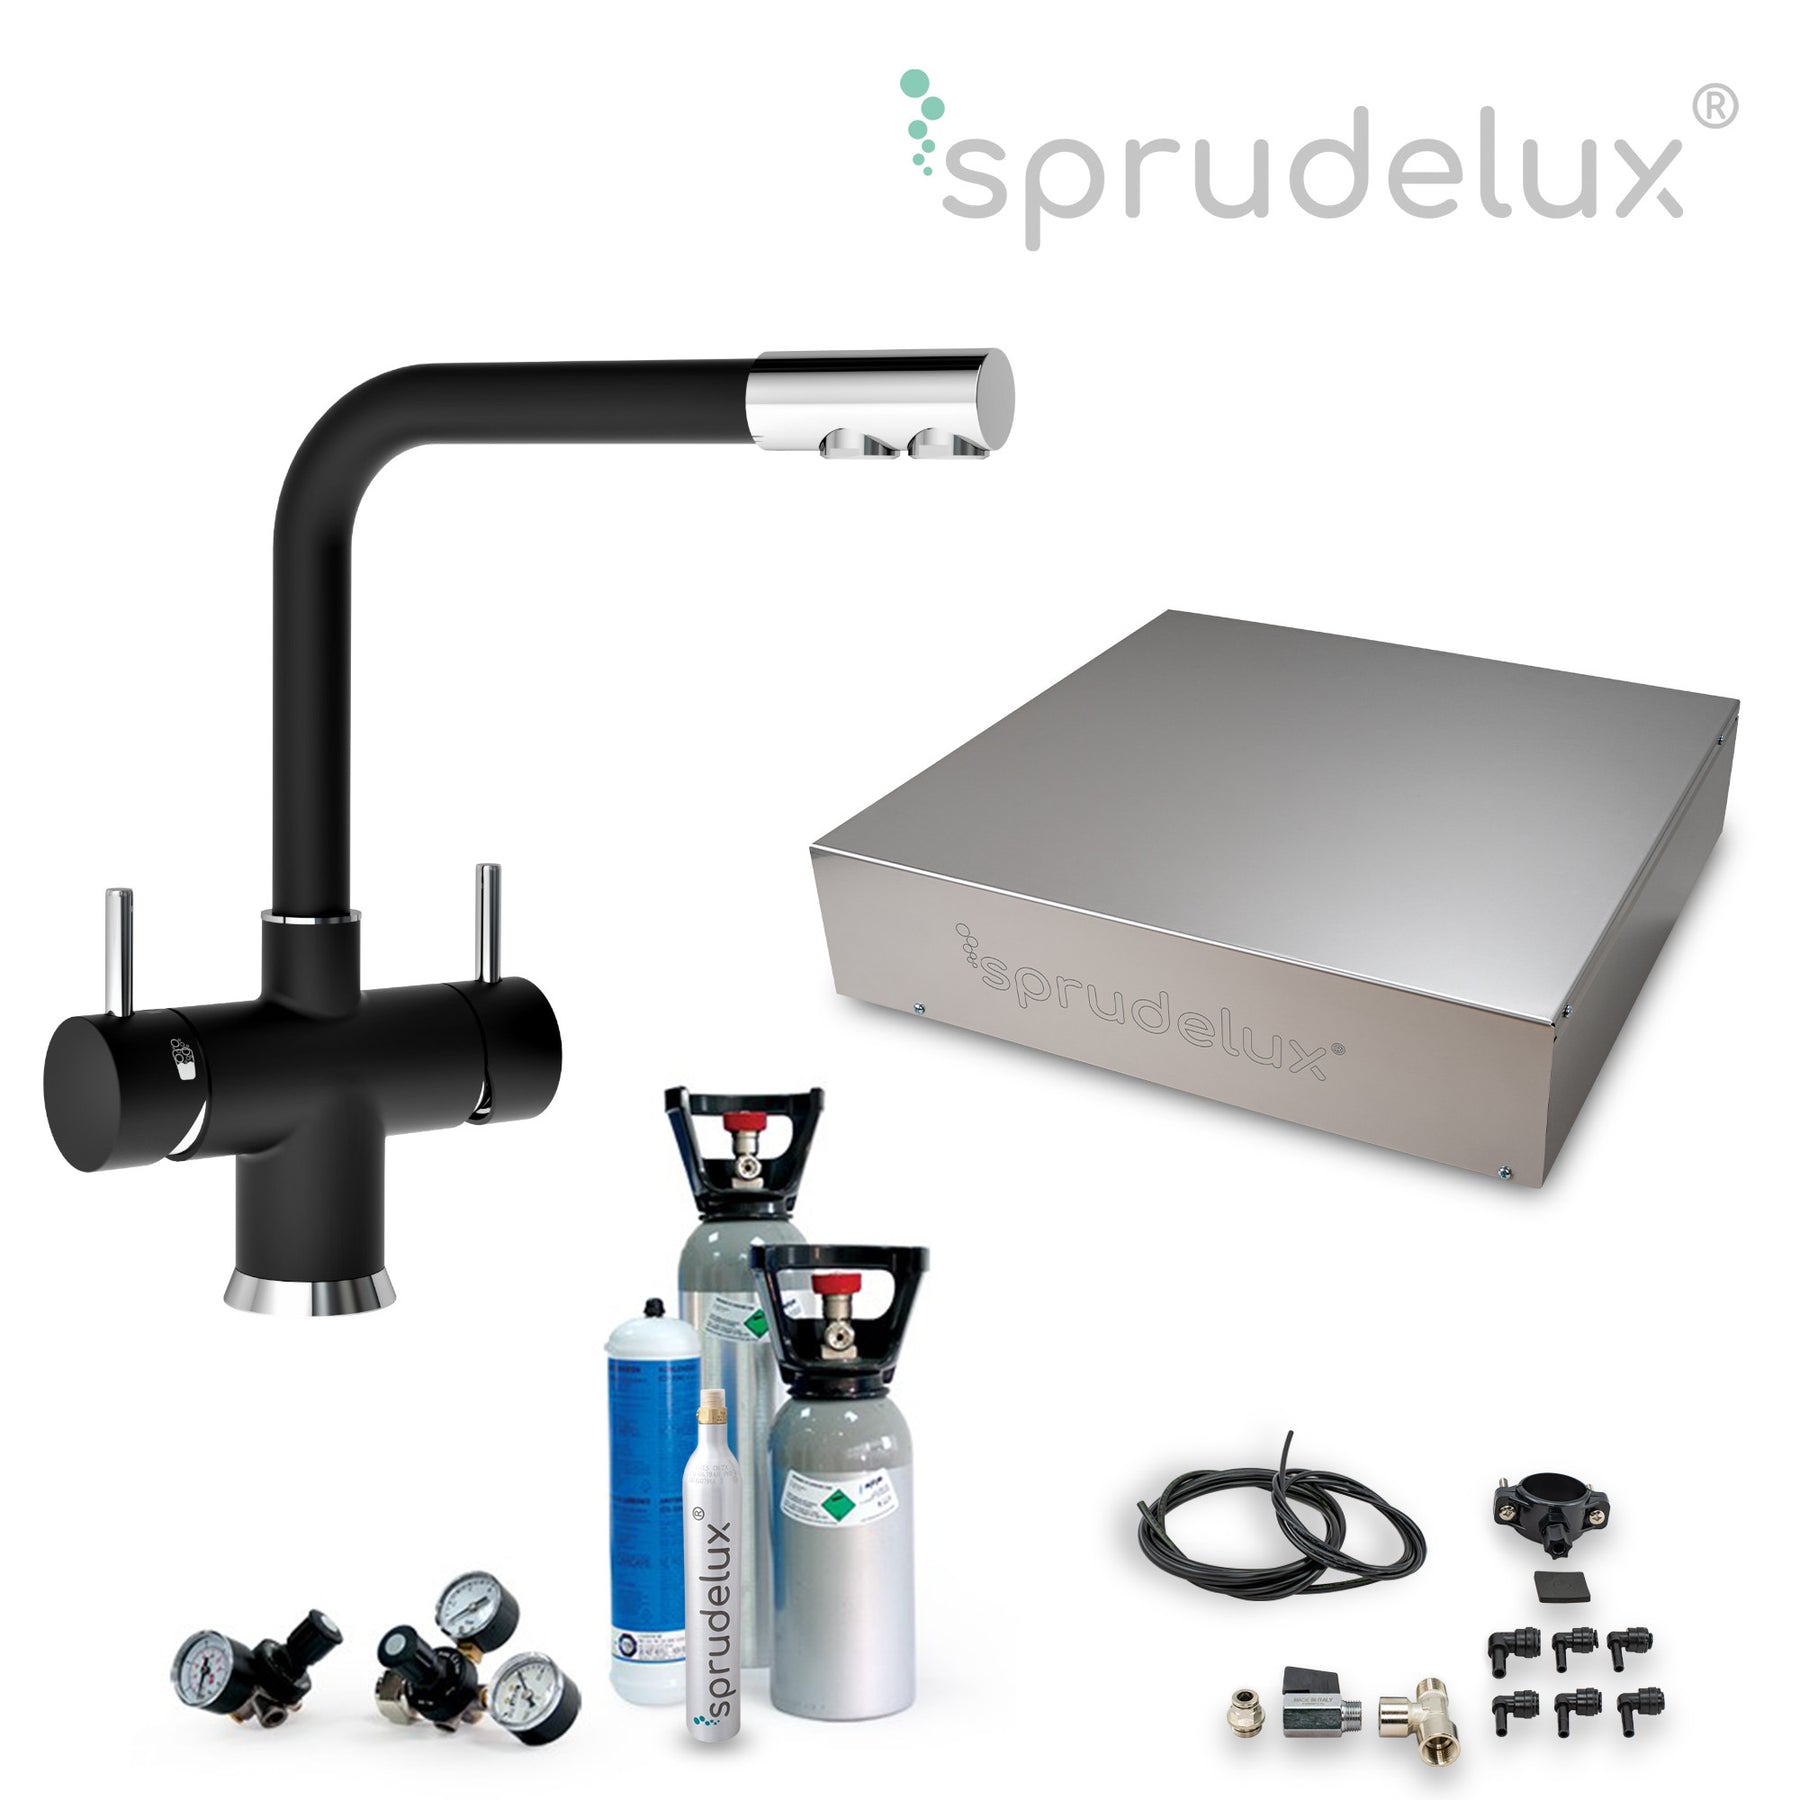 SPRUDELUX® Untertisch-Trinkwassersystem INOX ULTRA FLAT WiFi inkl. 5-Wege-Armatur NOBIUS L-Auslauf